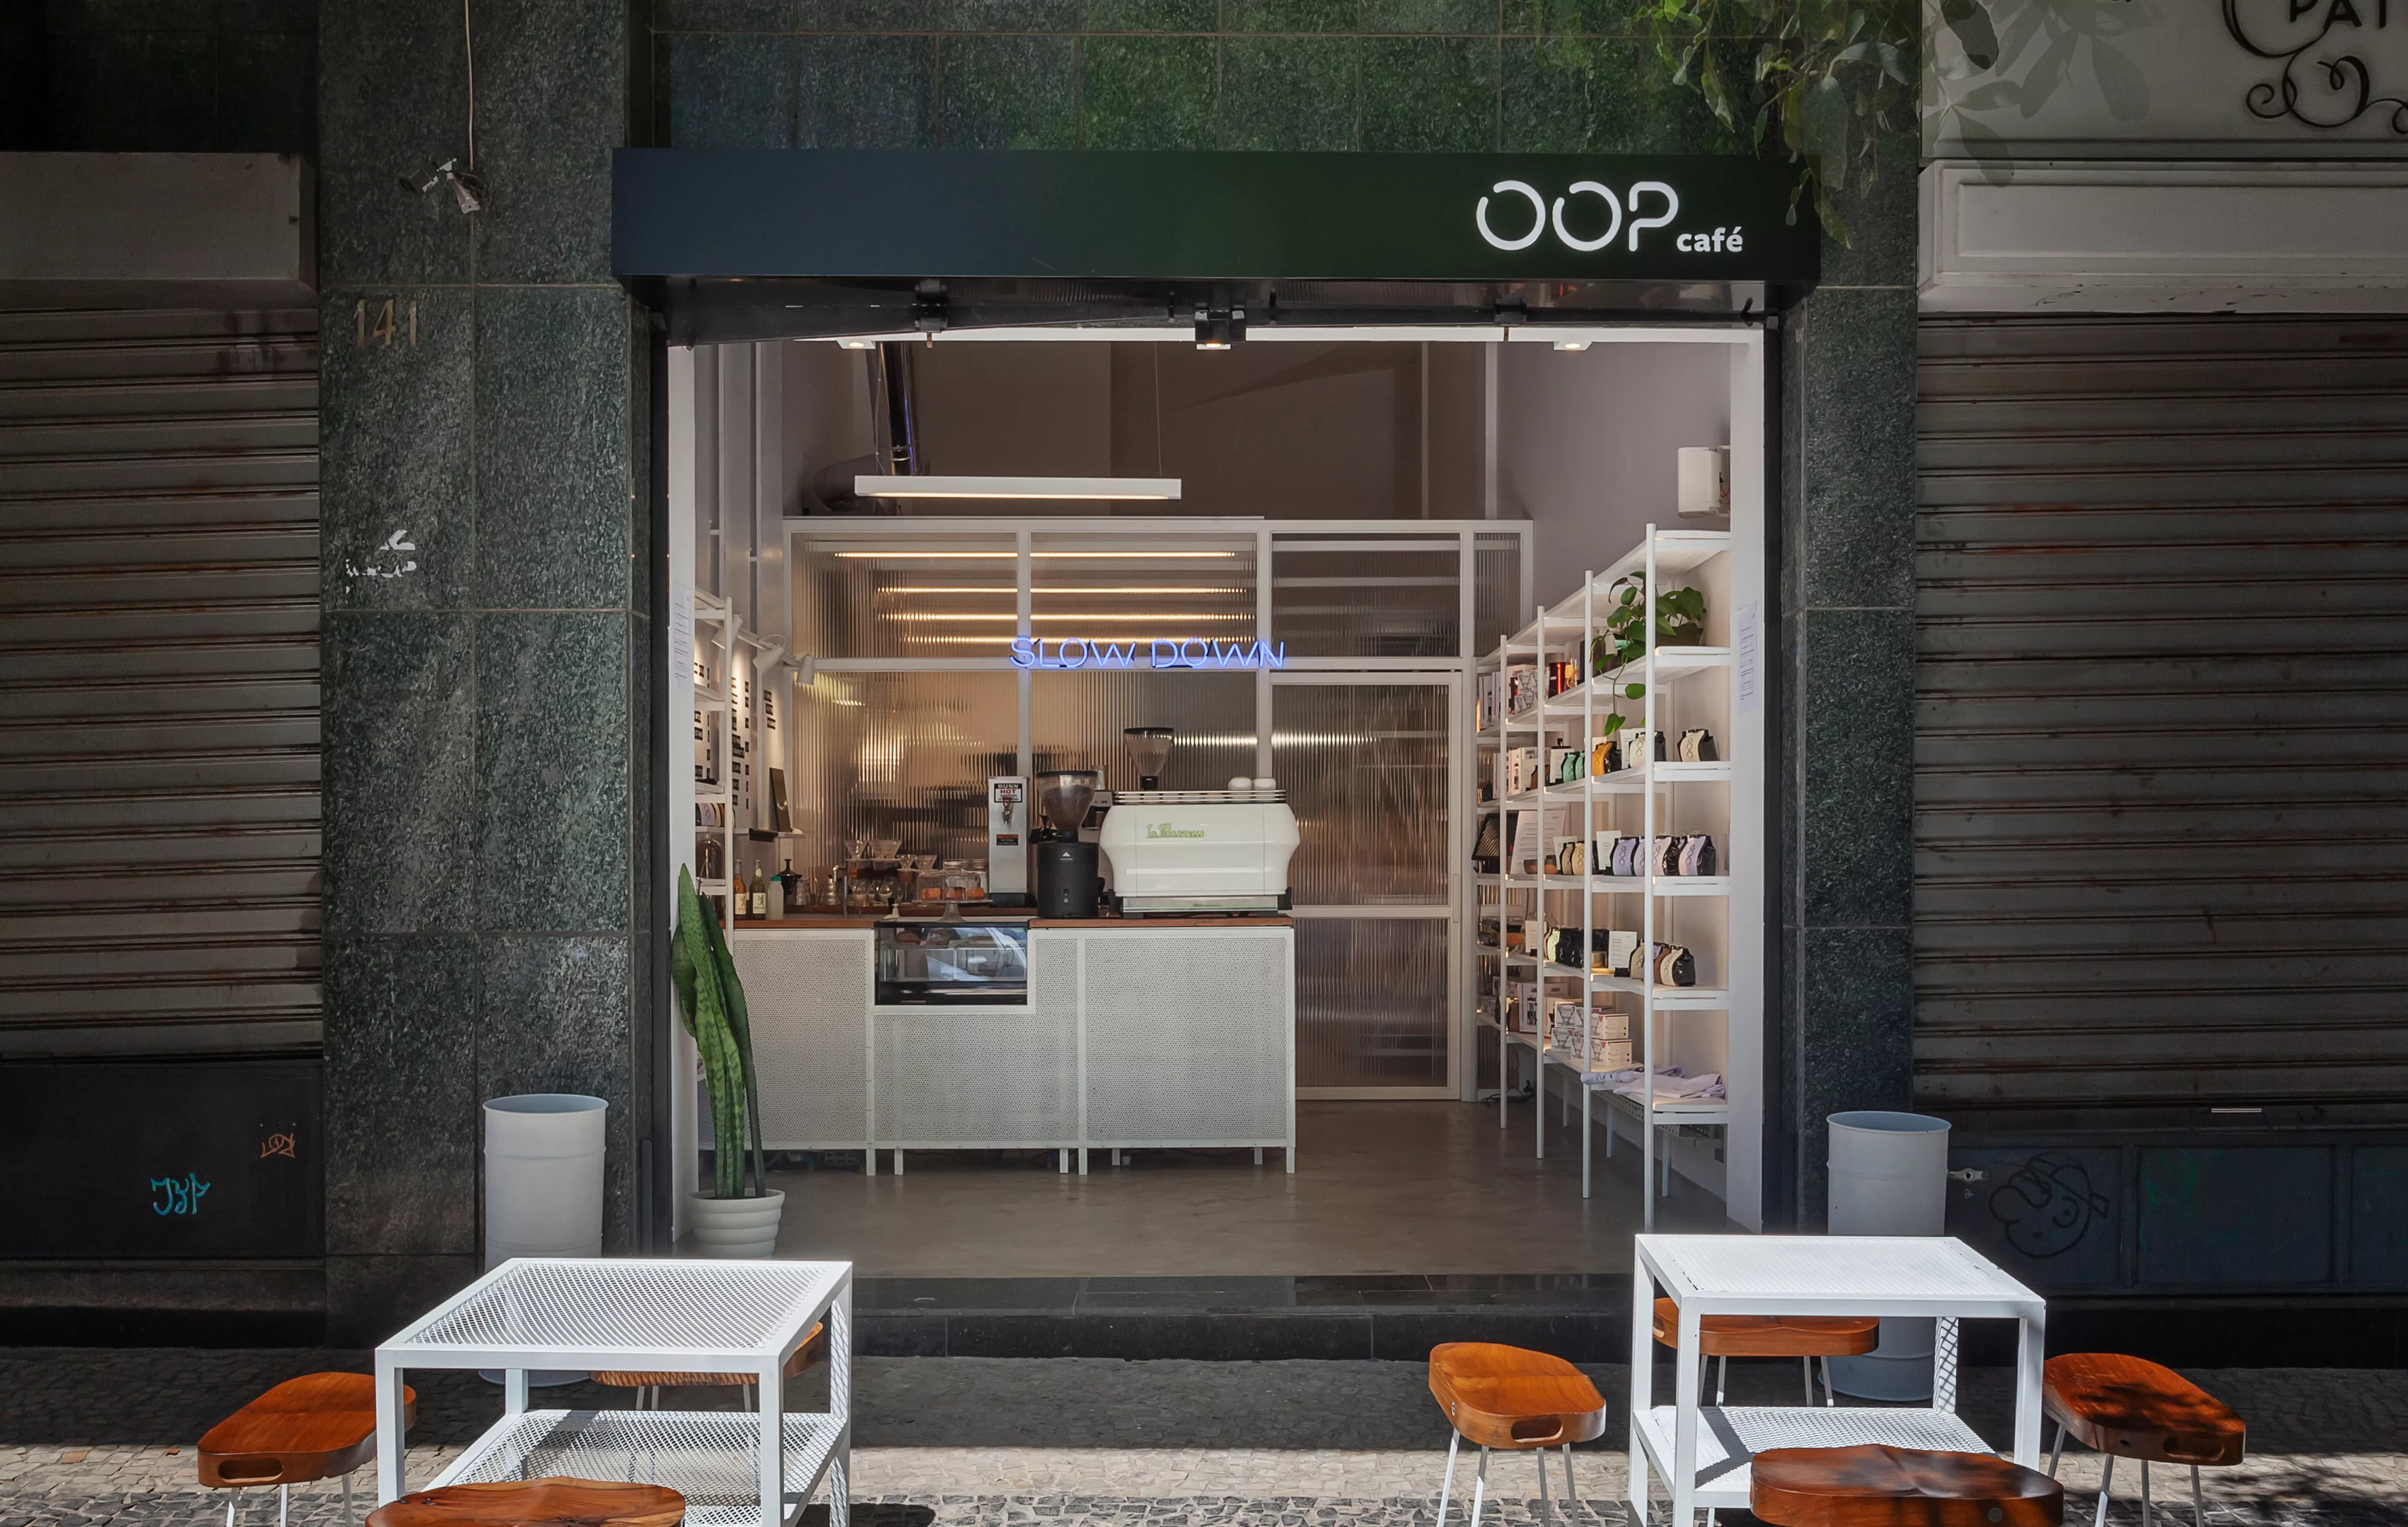 Fachada do estabelecimento gastronômico Oop Café.